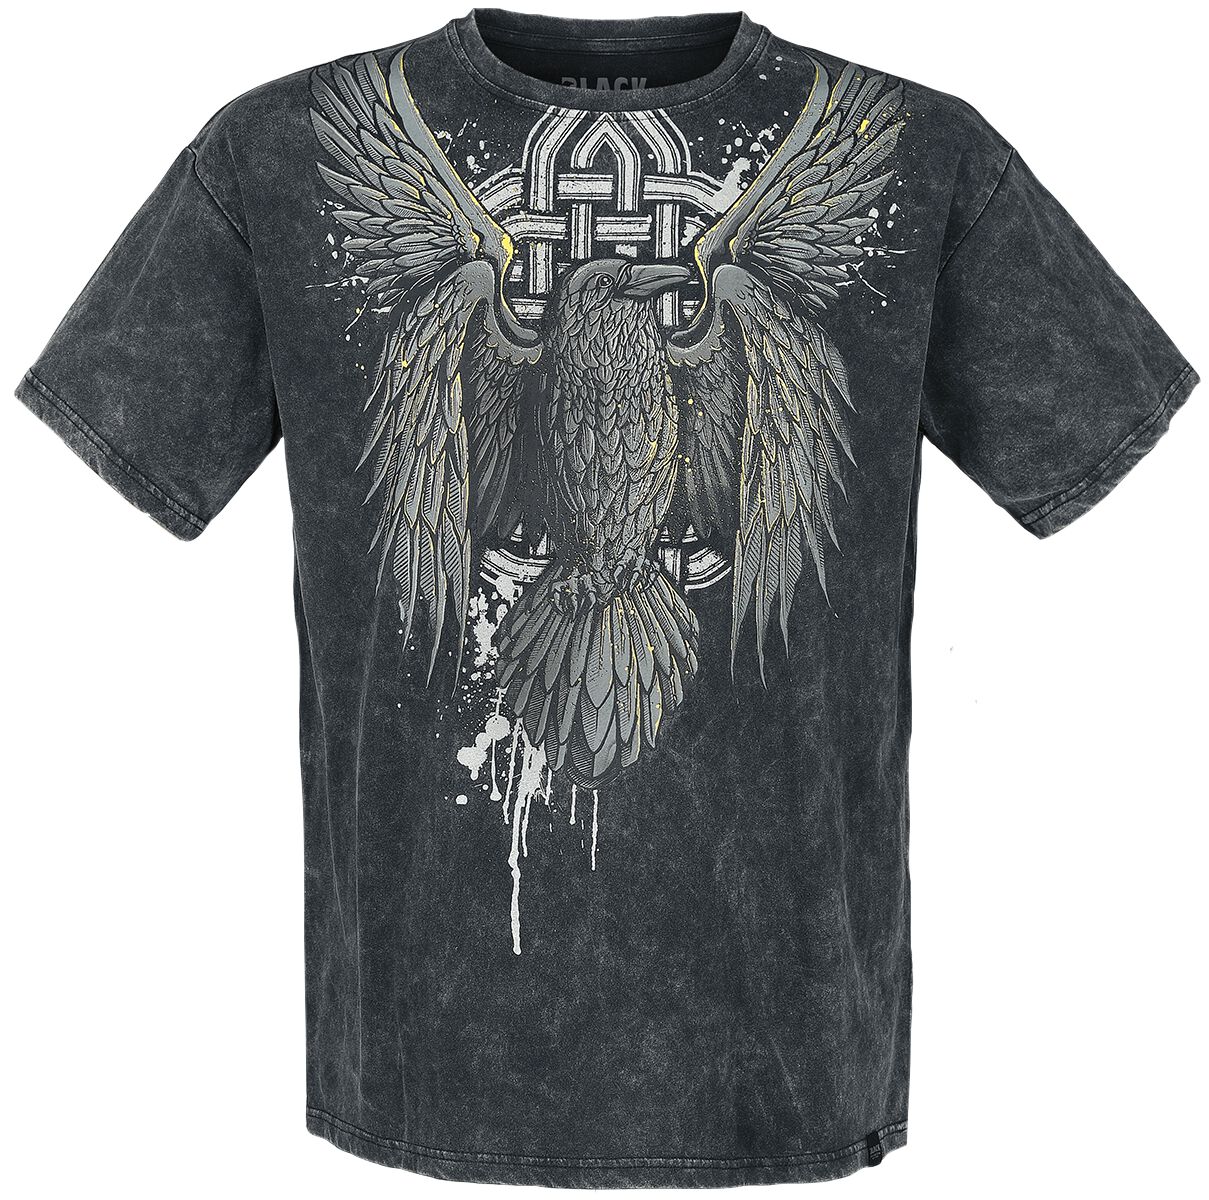 T-Shirt Manches courtes de Black Premium by EMP - T-Shirt mit Rabenprint - S à 4XL - pour Homme - no